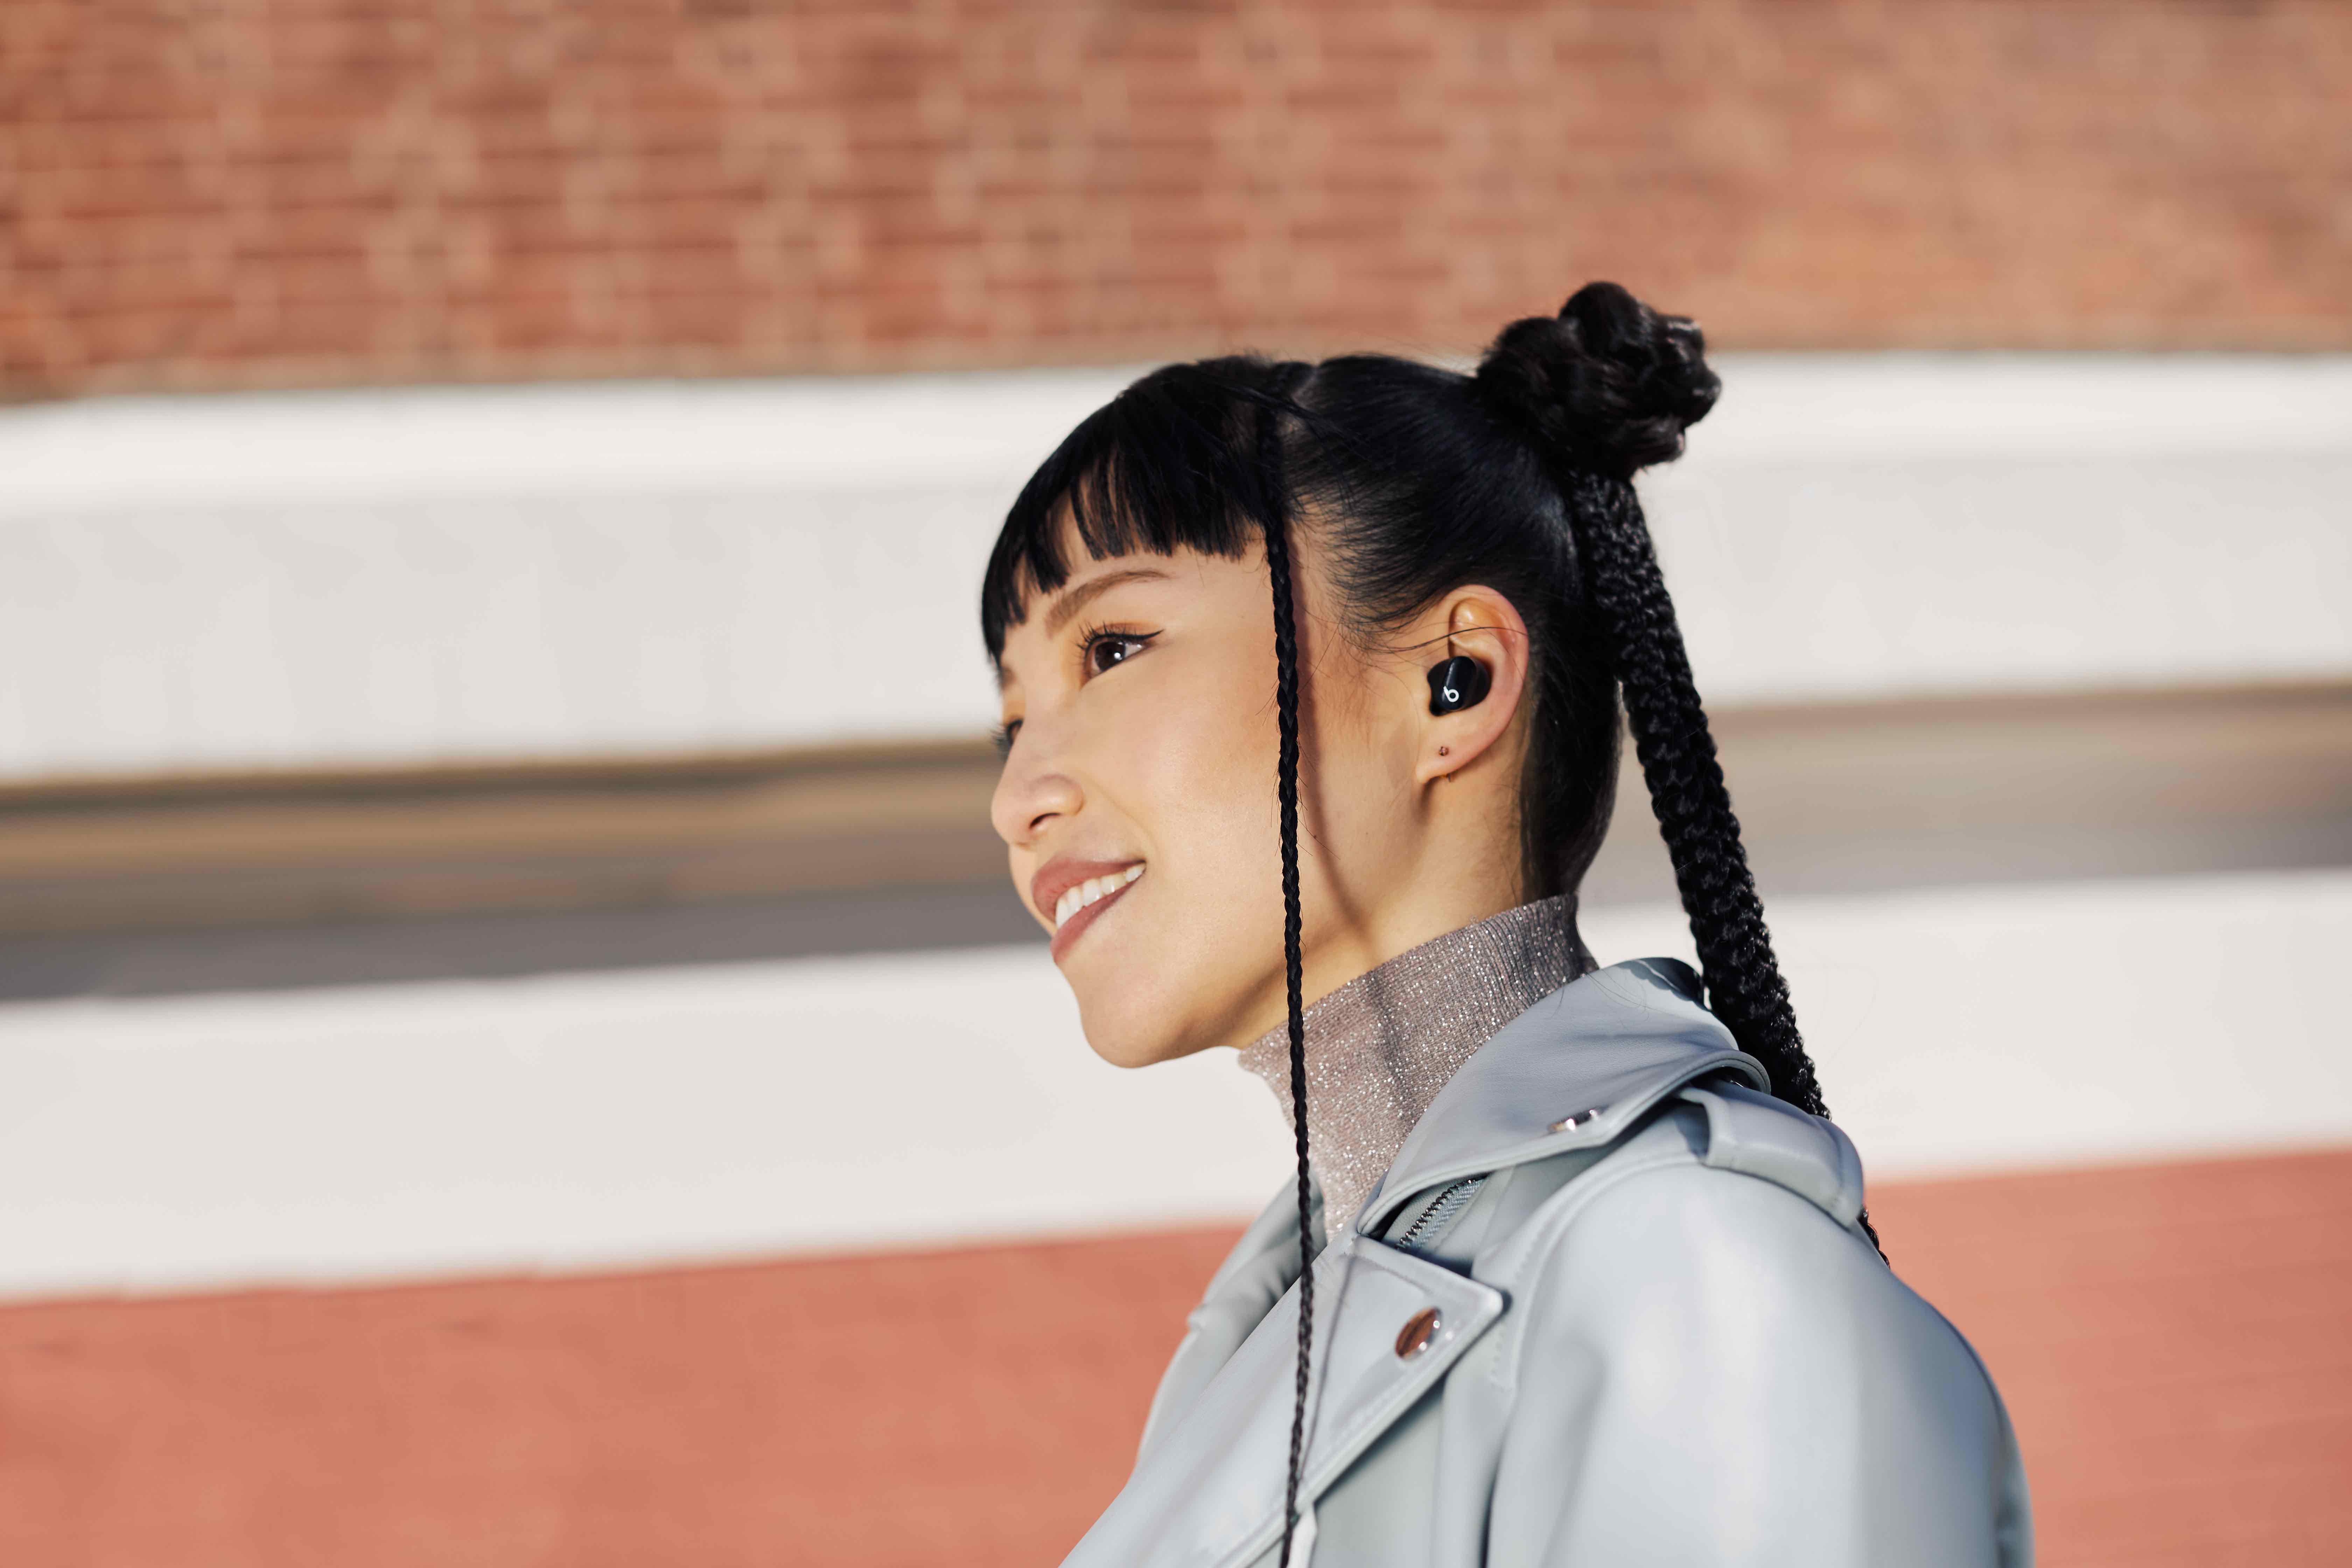 BEATS Studio Buds Kopfhörer True Wireless, Bluetooth Black In-ear